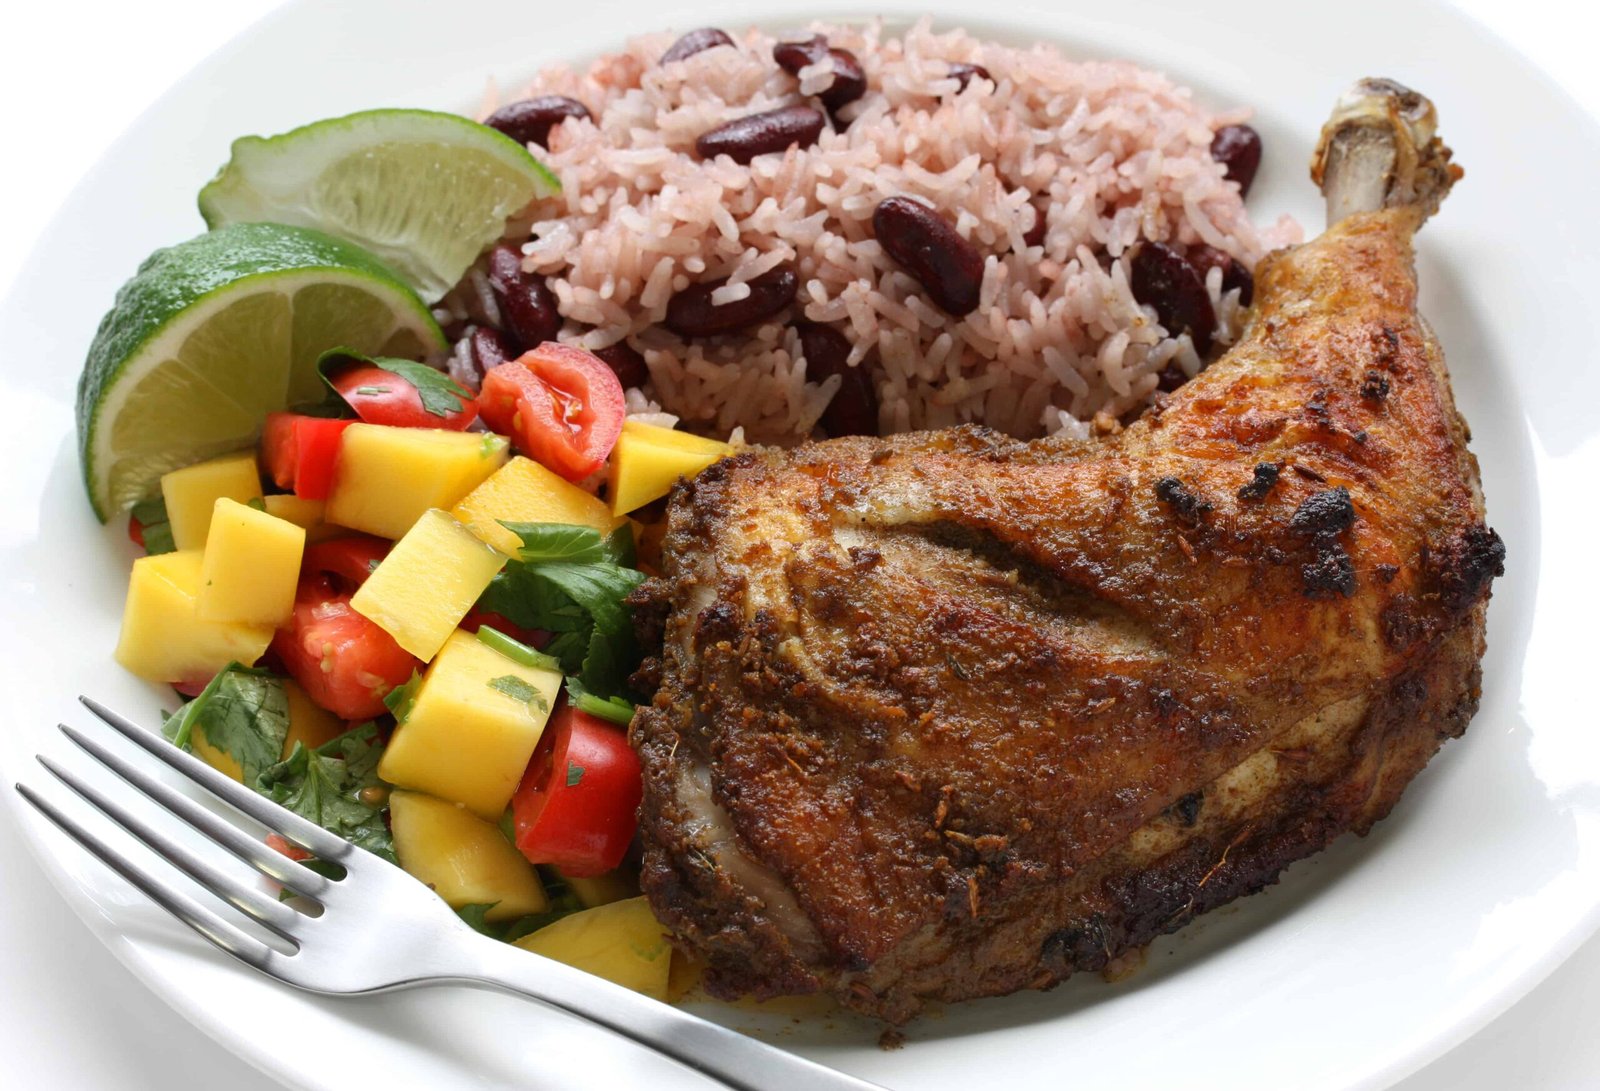 Jamaican cuisine